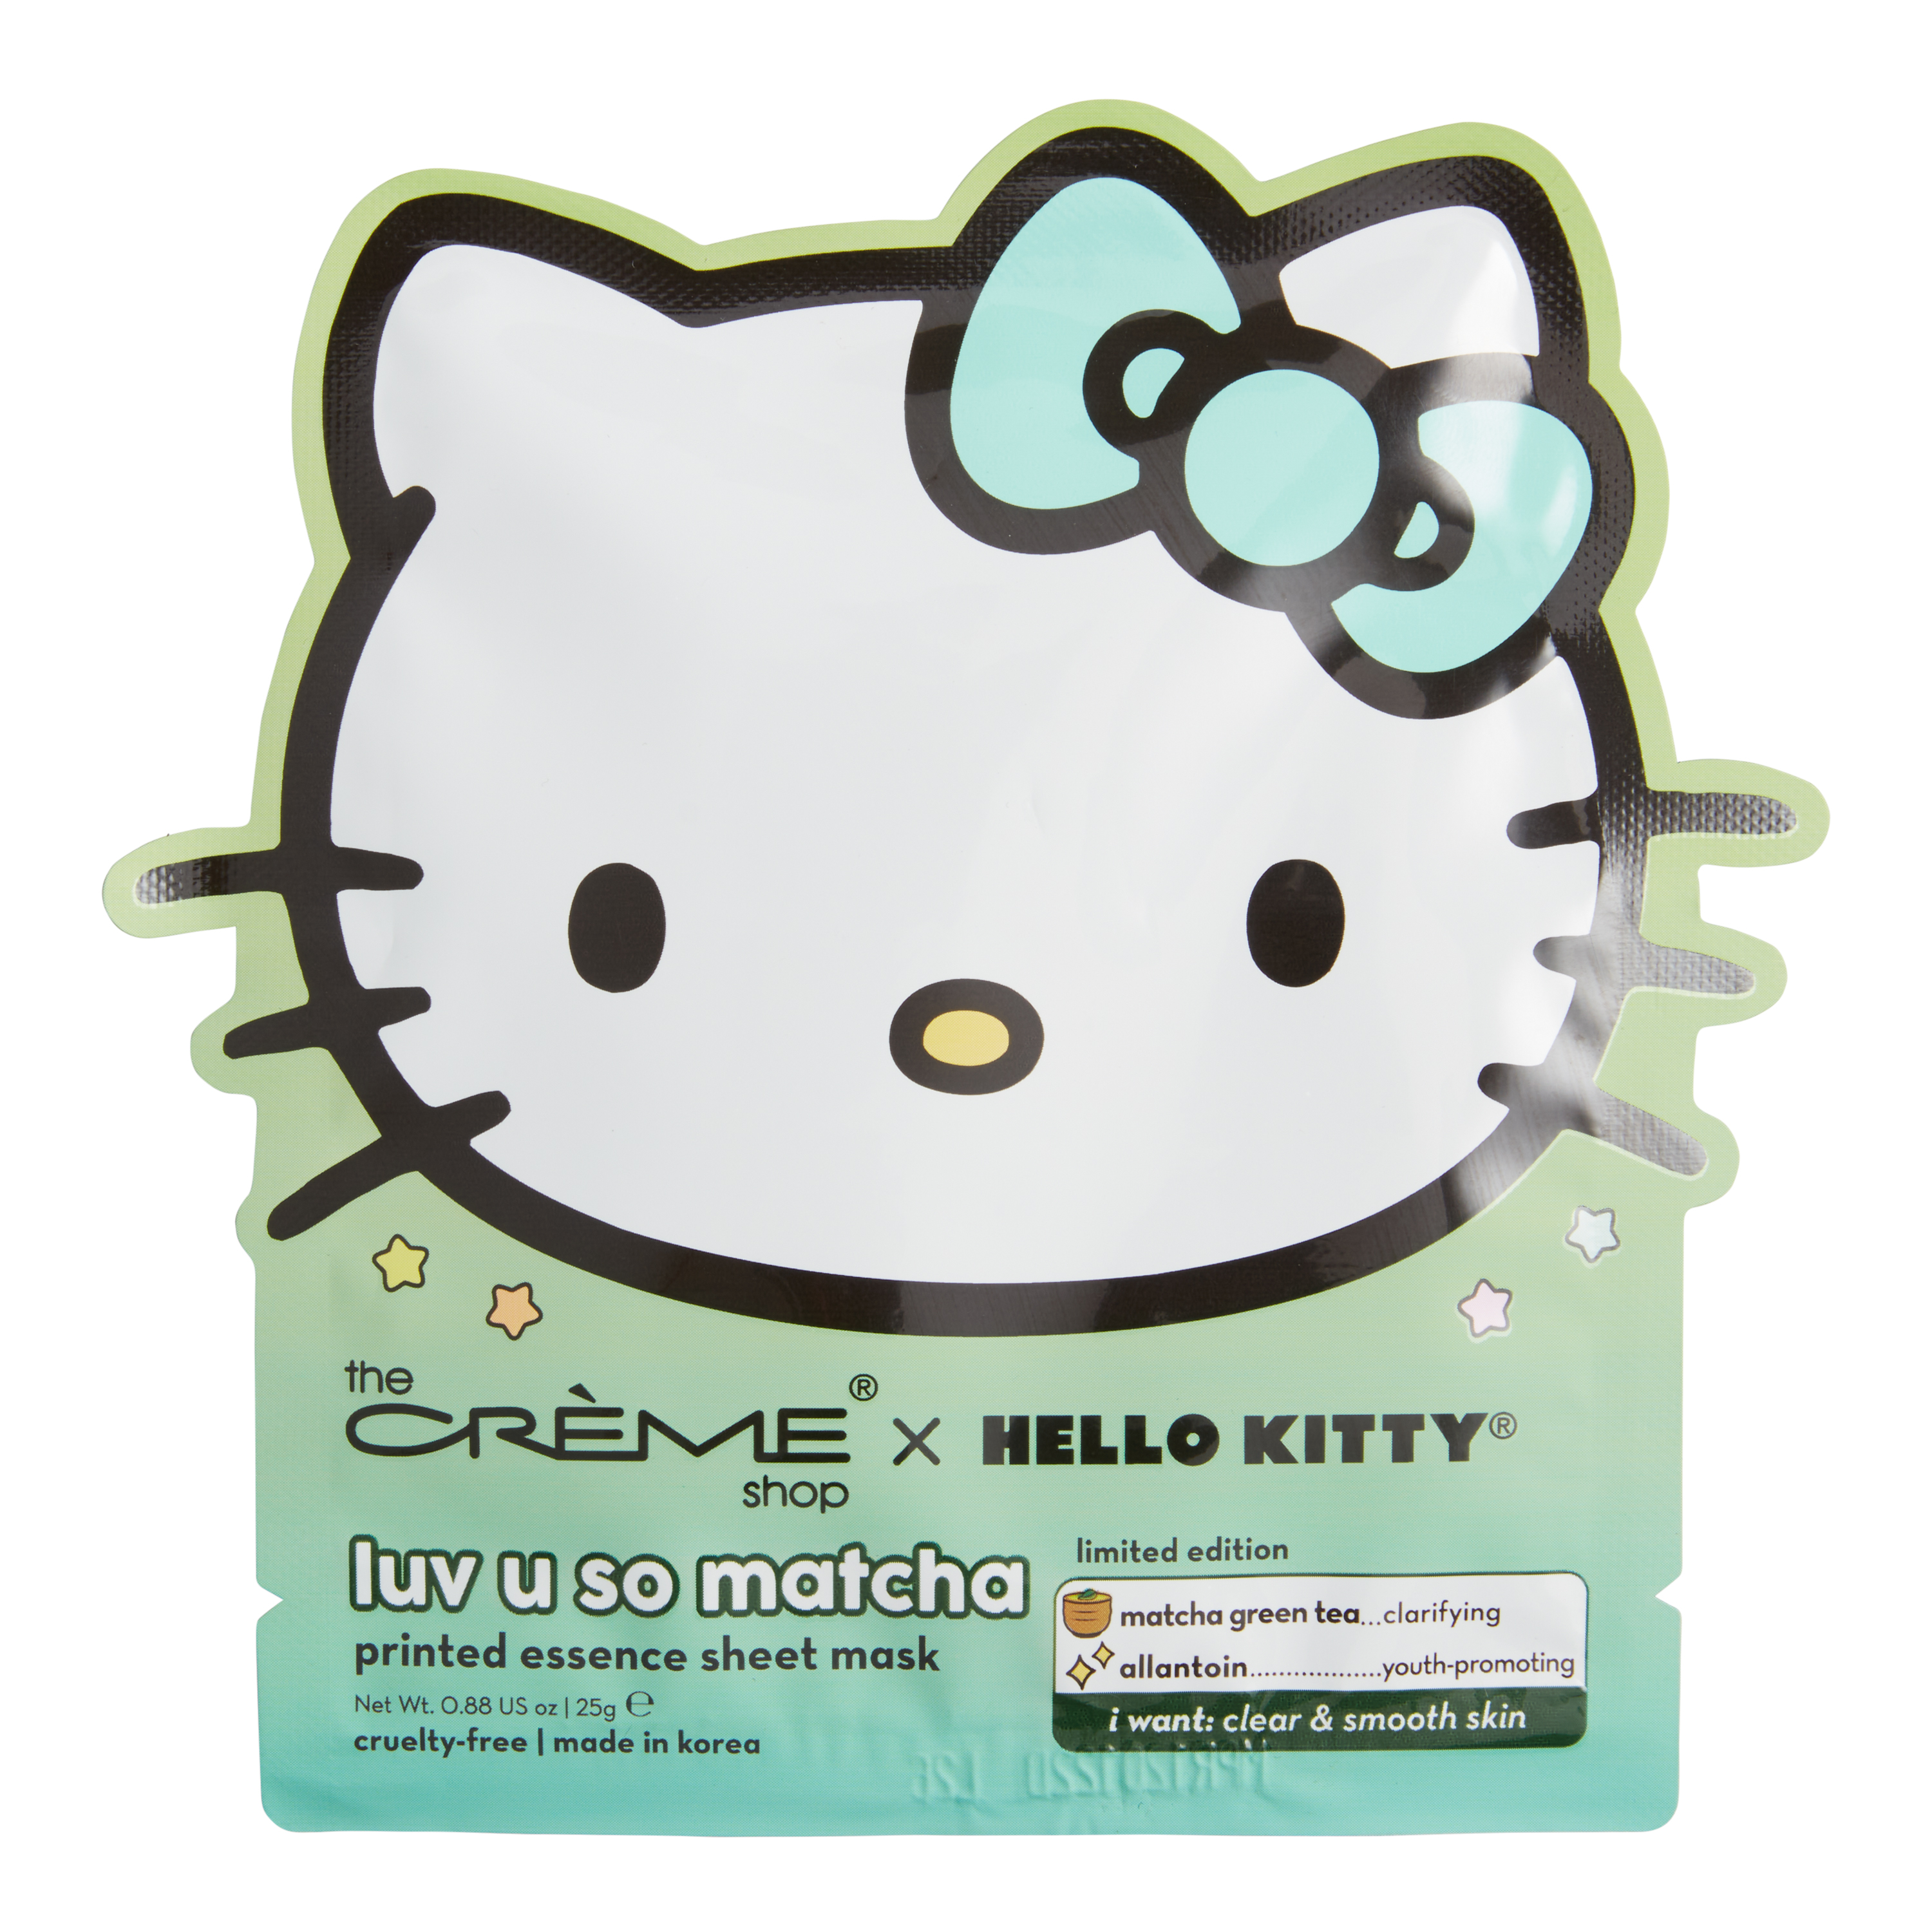 Hello Kitty Rainbow Relaxation Sticker Sheet